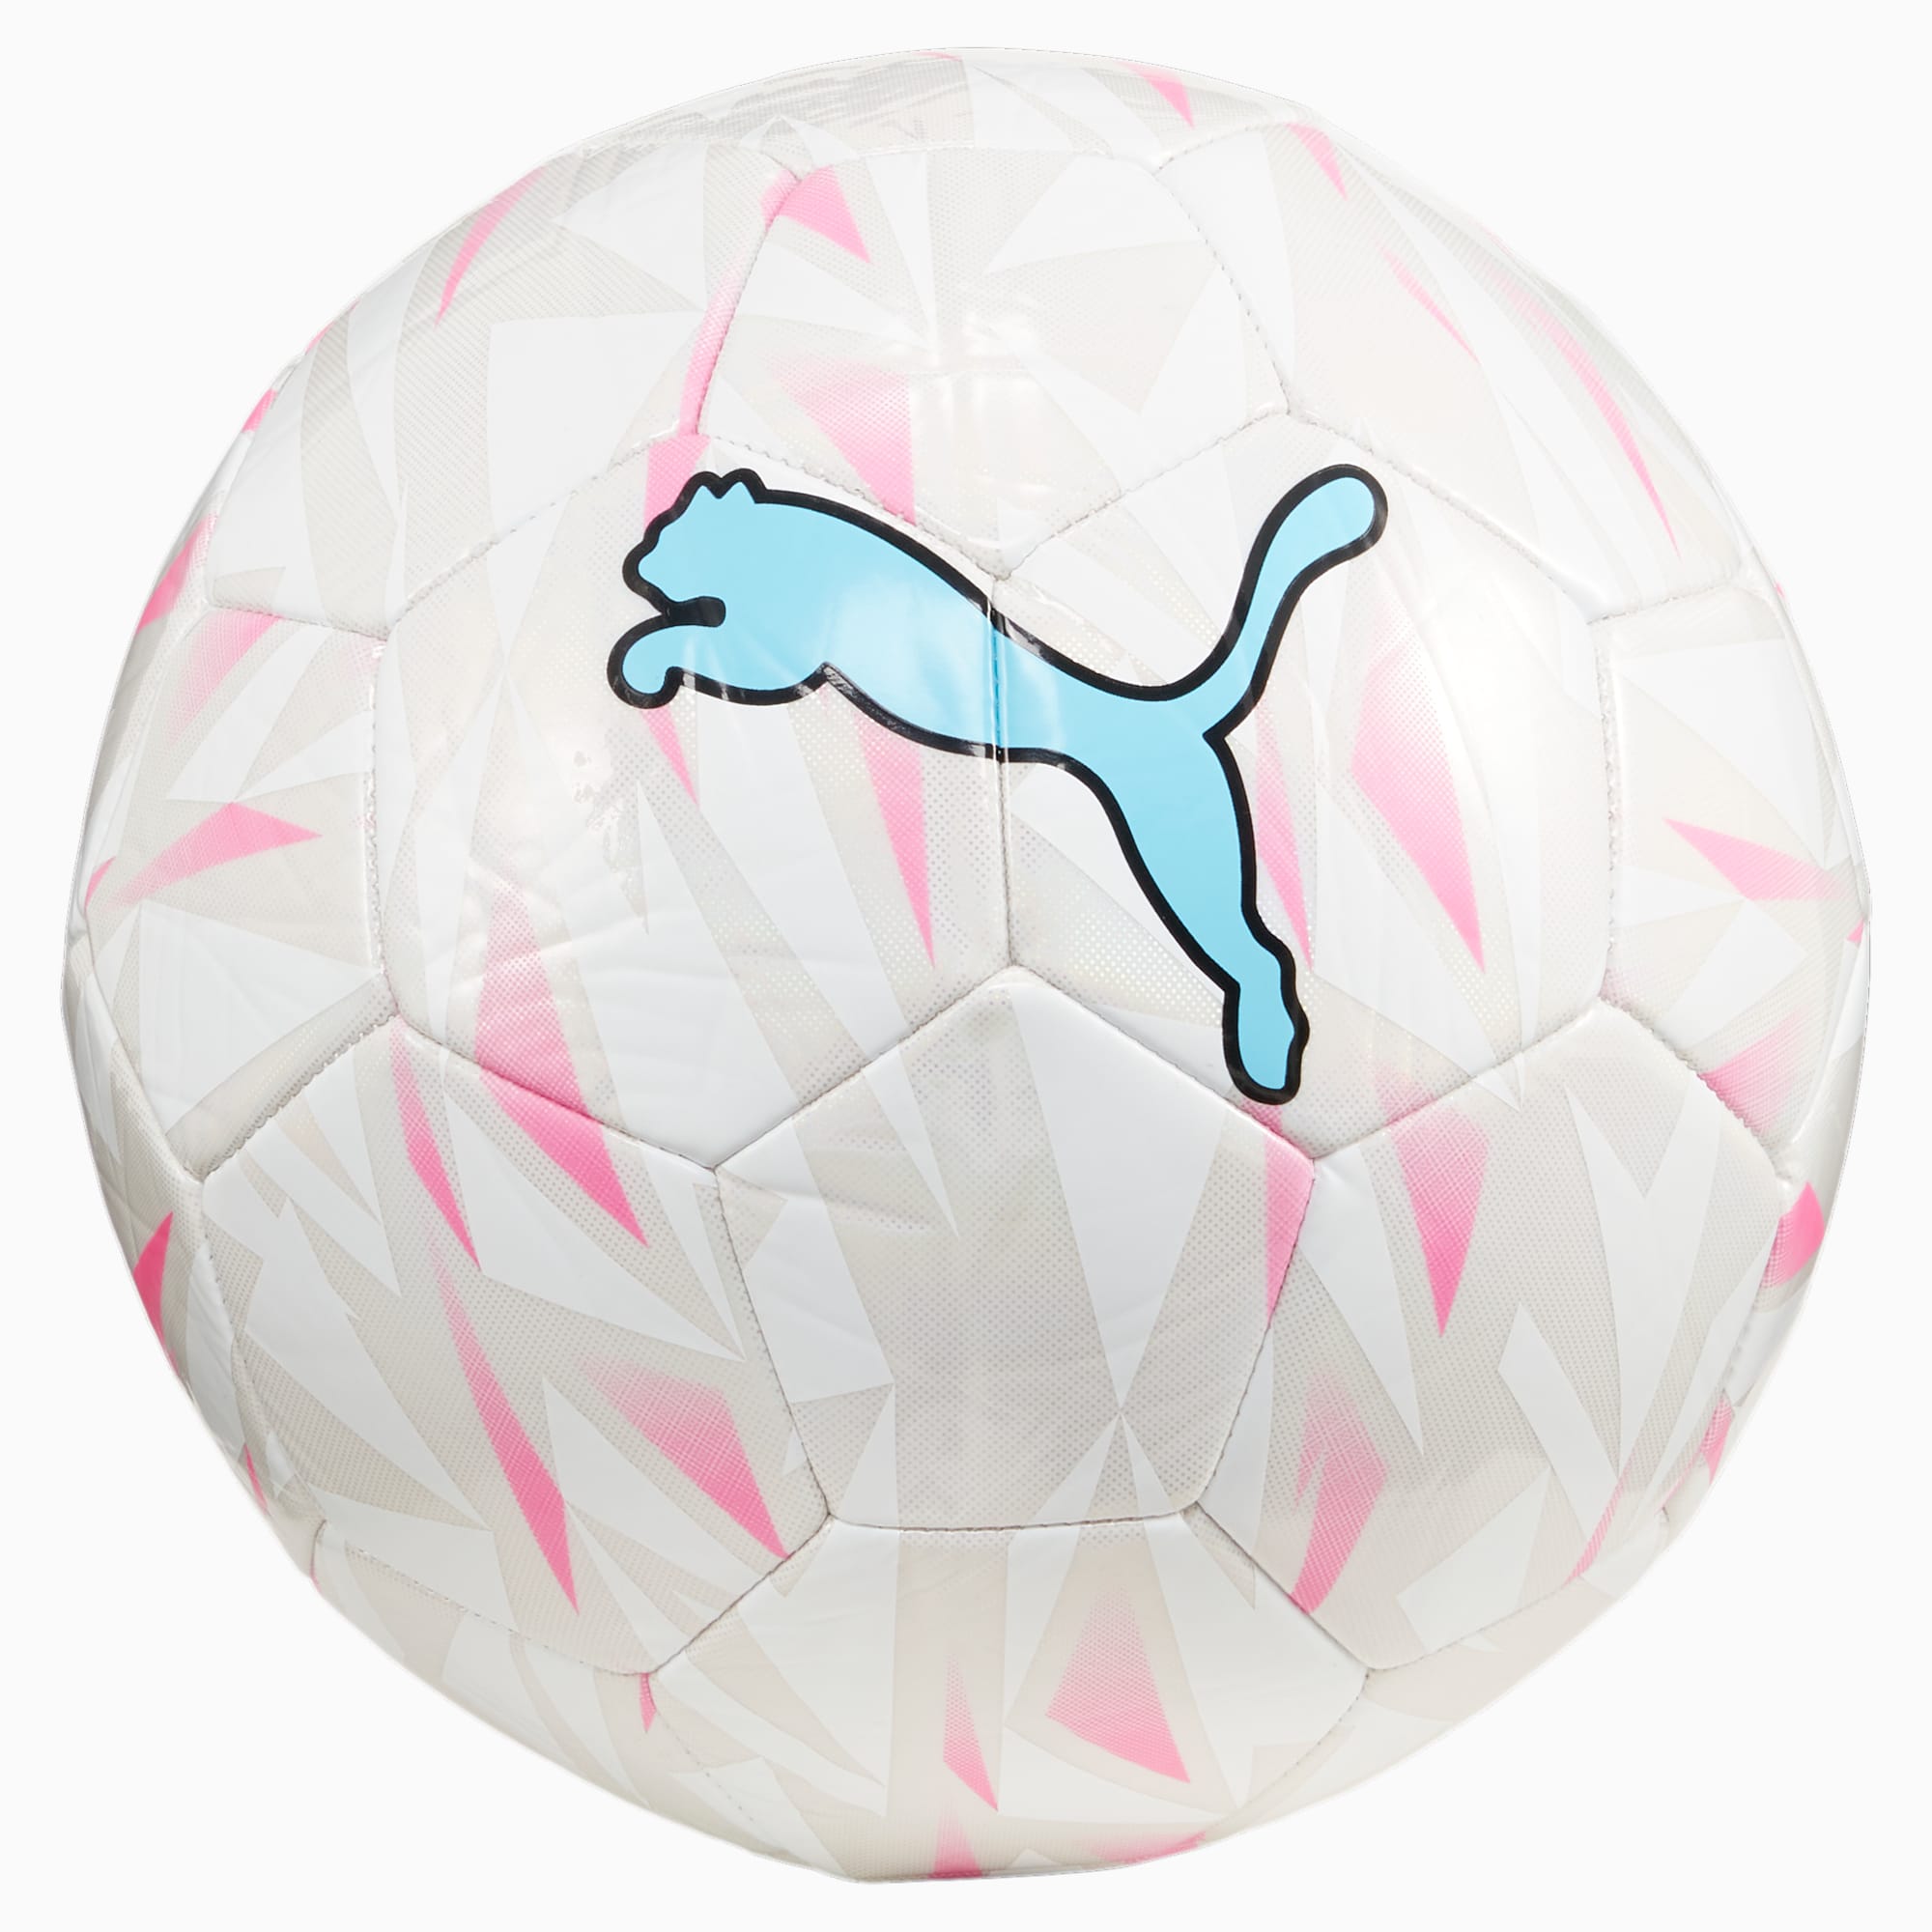 PUMA FINAL Graphic Fußball, Silber/Rosa/Weiß, Größe: 5